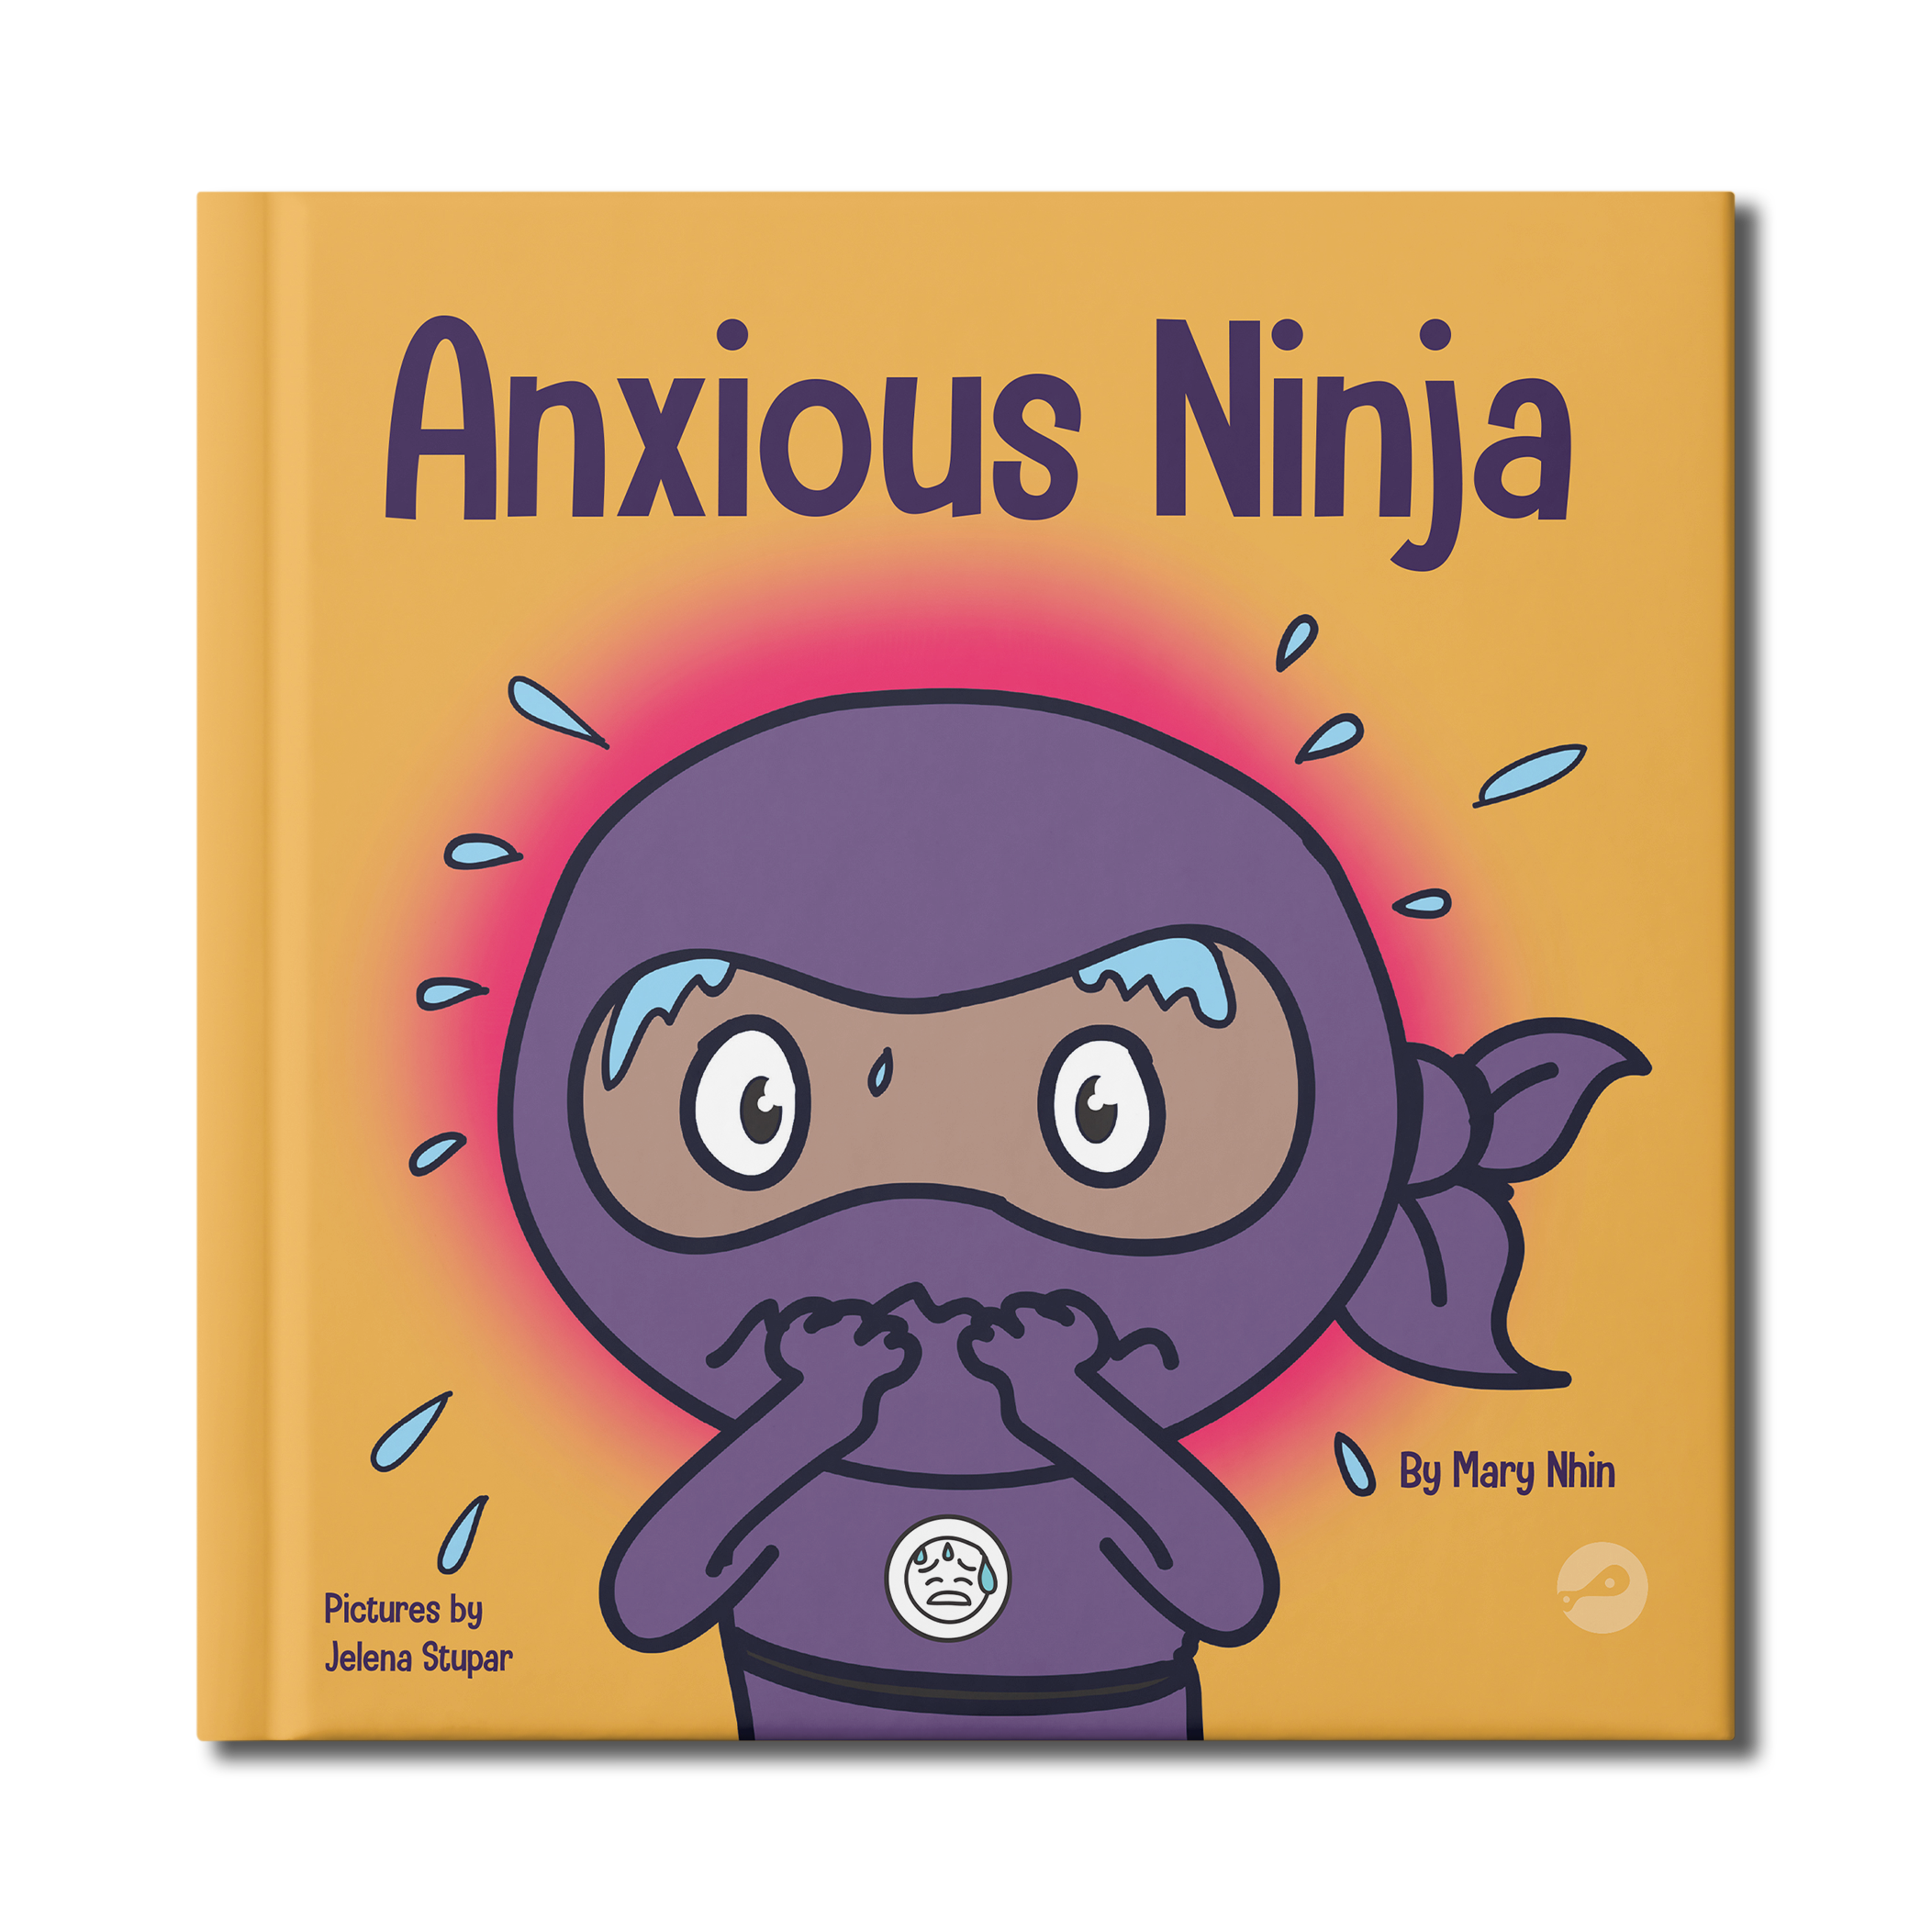 Scissors on Strike Paperback Book – Ninja Life Hacks - Growth Mindset